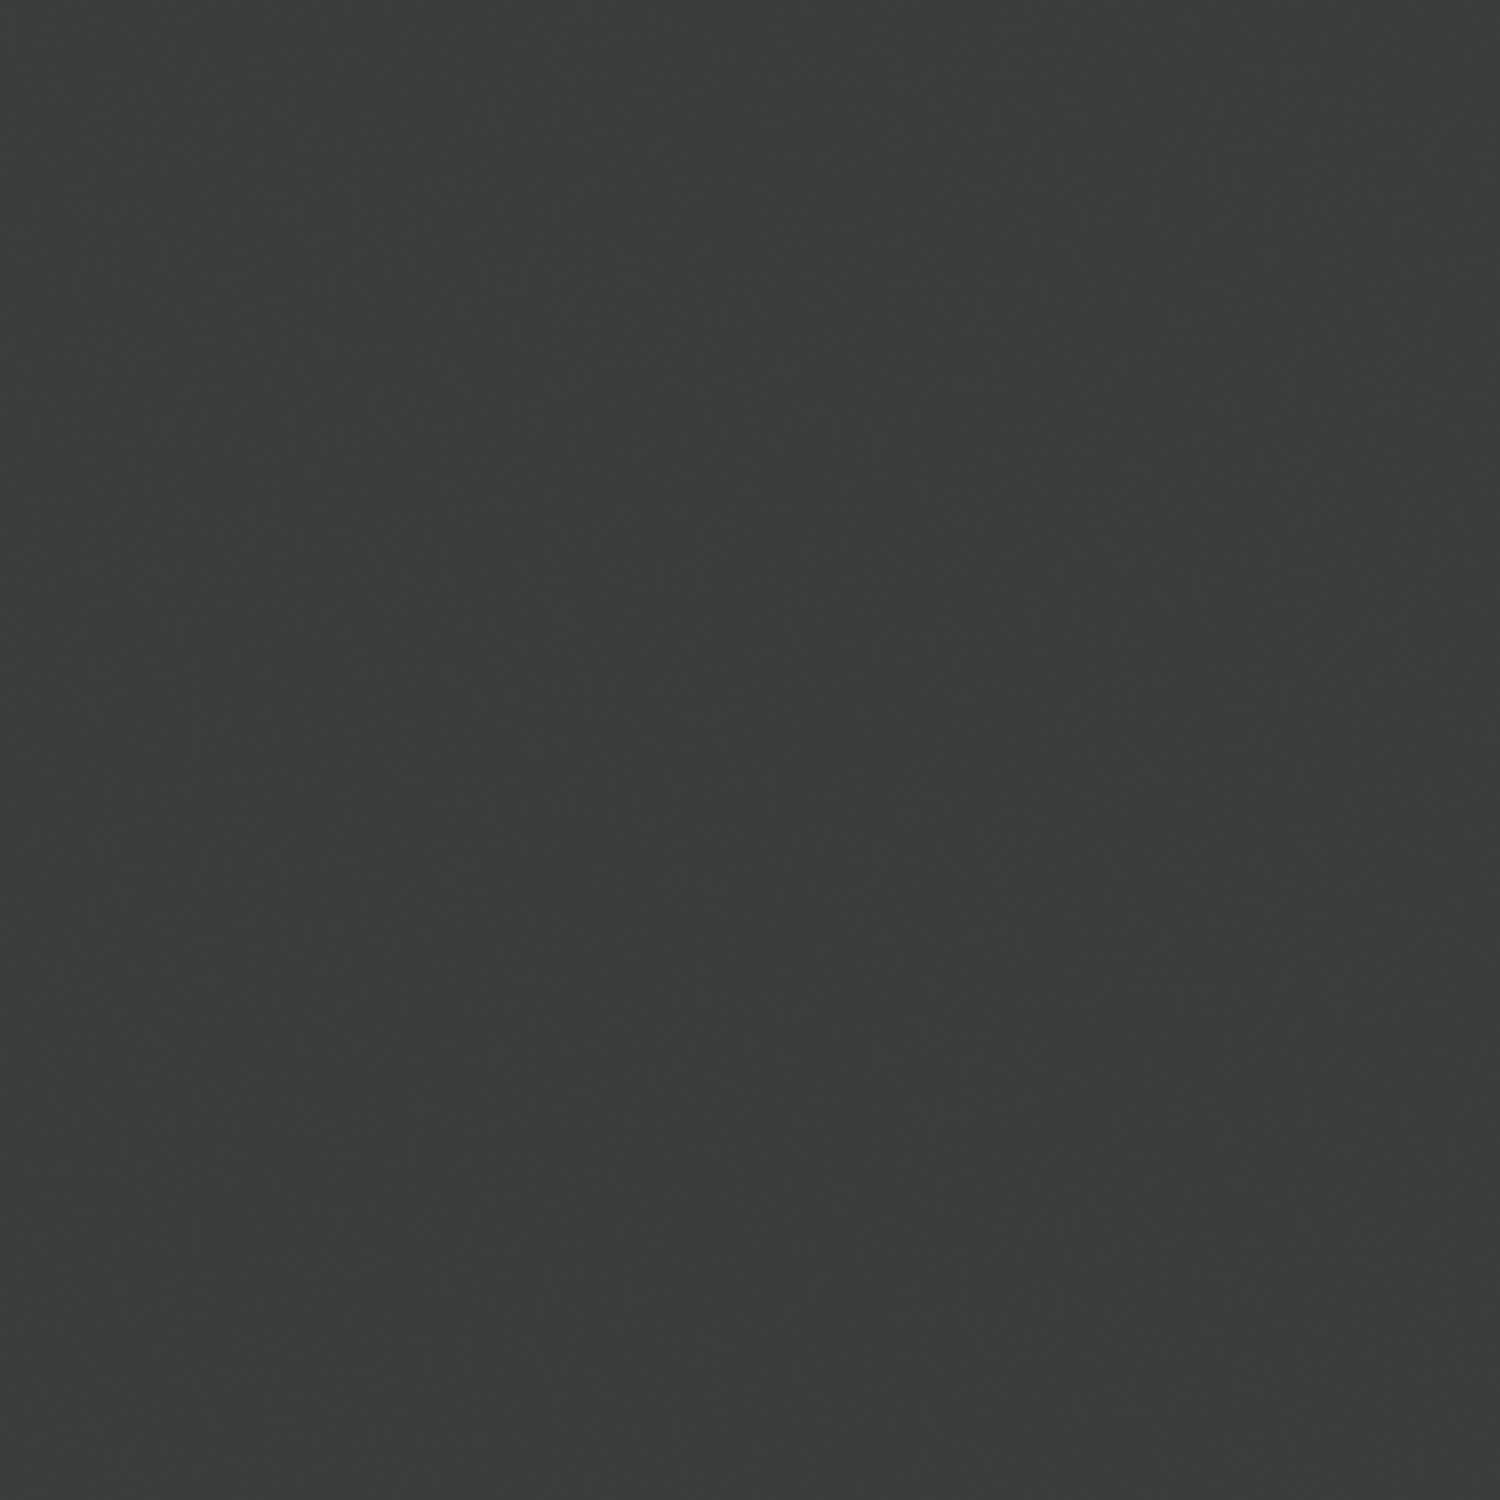 INOSIGN Hängevitrine »Premont«, (1 St.), ca. 35 cm breit, zweifarbiger Schrank, moderne Eiche, Wandmontage